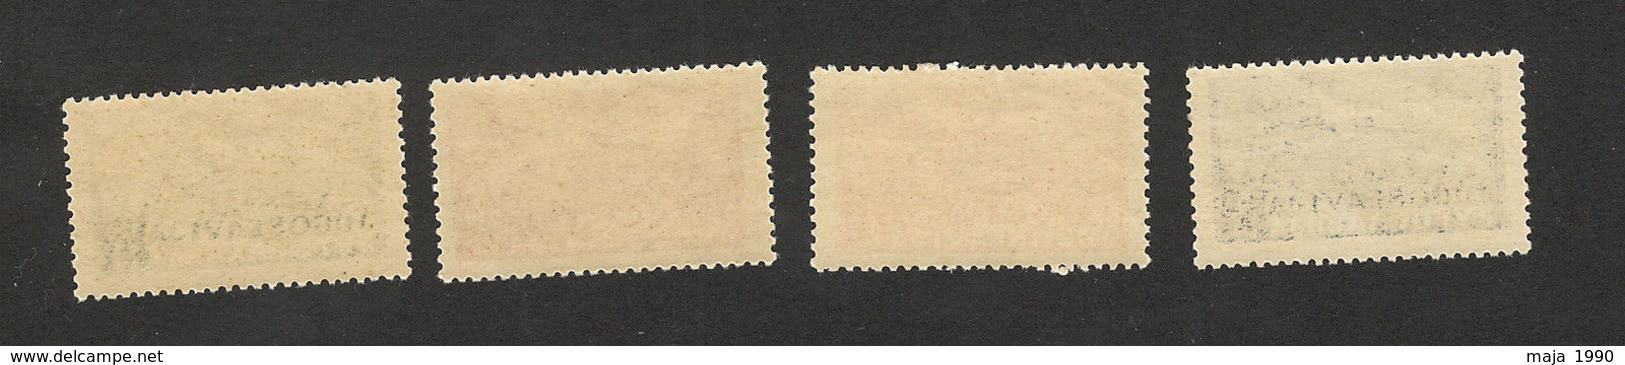 YUGOSLAVIA-MNH SET-TRACK SAMAC SARAJEVO-WORK ACTION-1947. - Unused Stamps